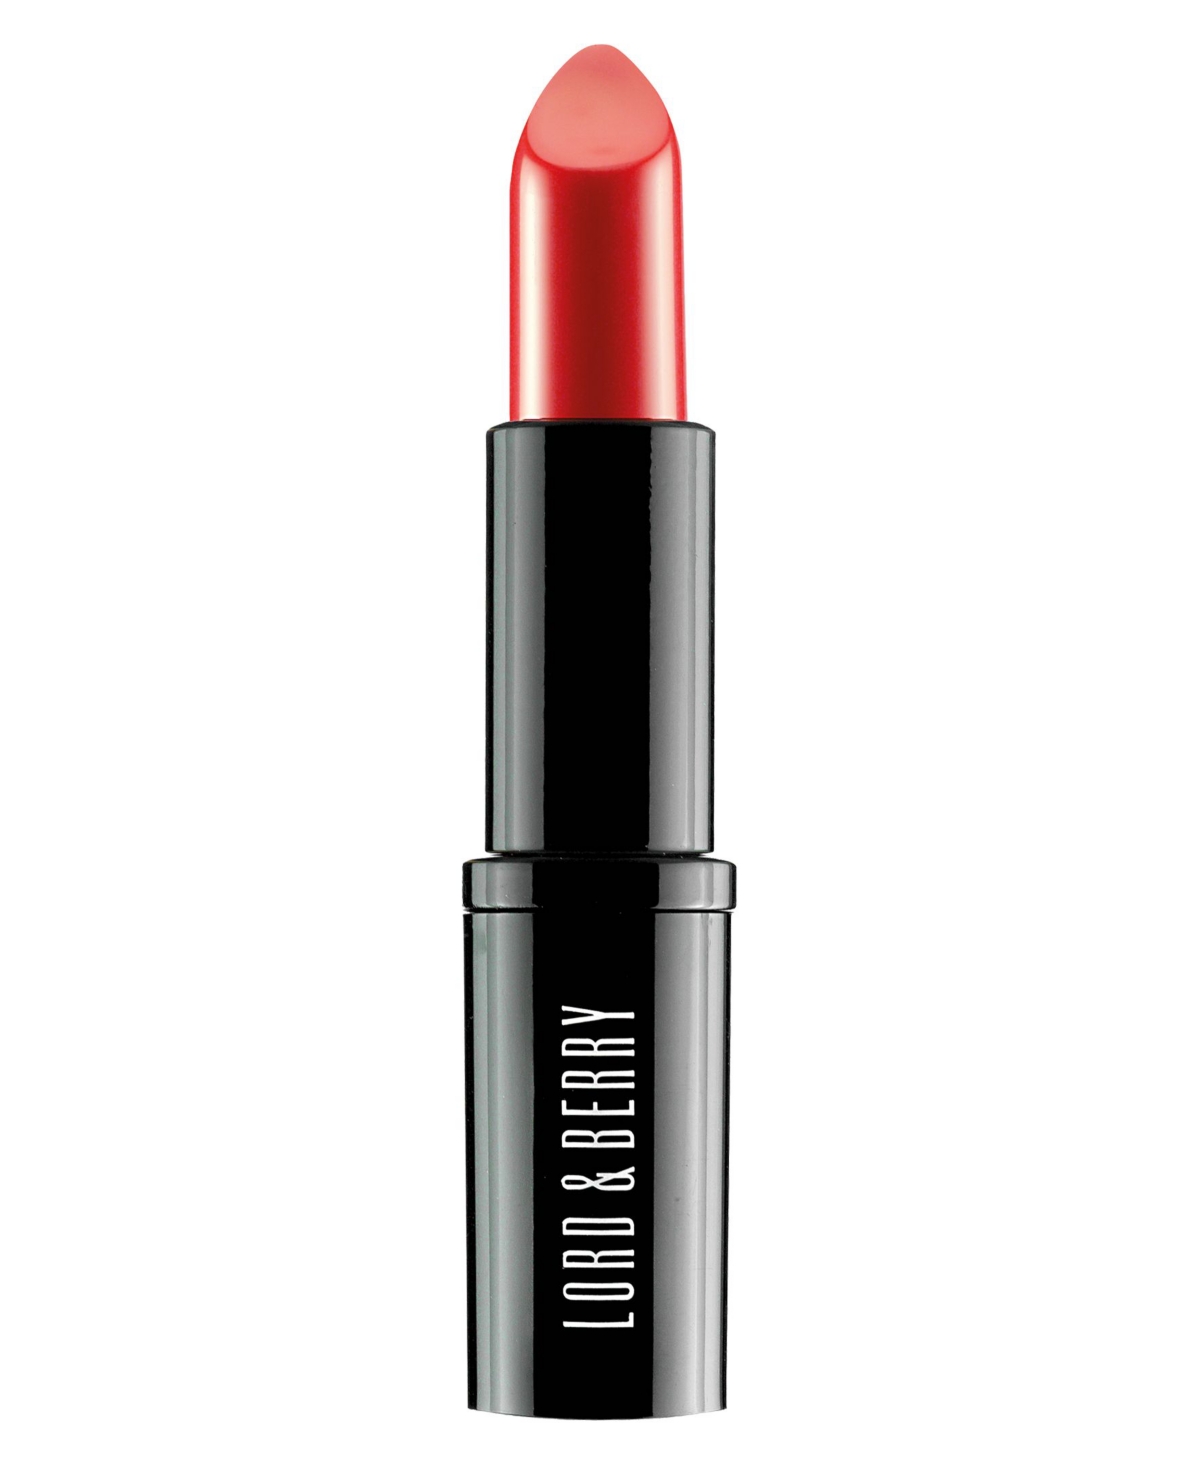 Lord & Berry Vogue Matte Lipstick In Red - True Orange Red